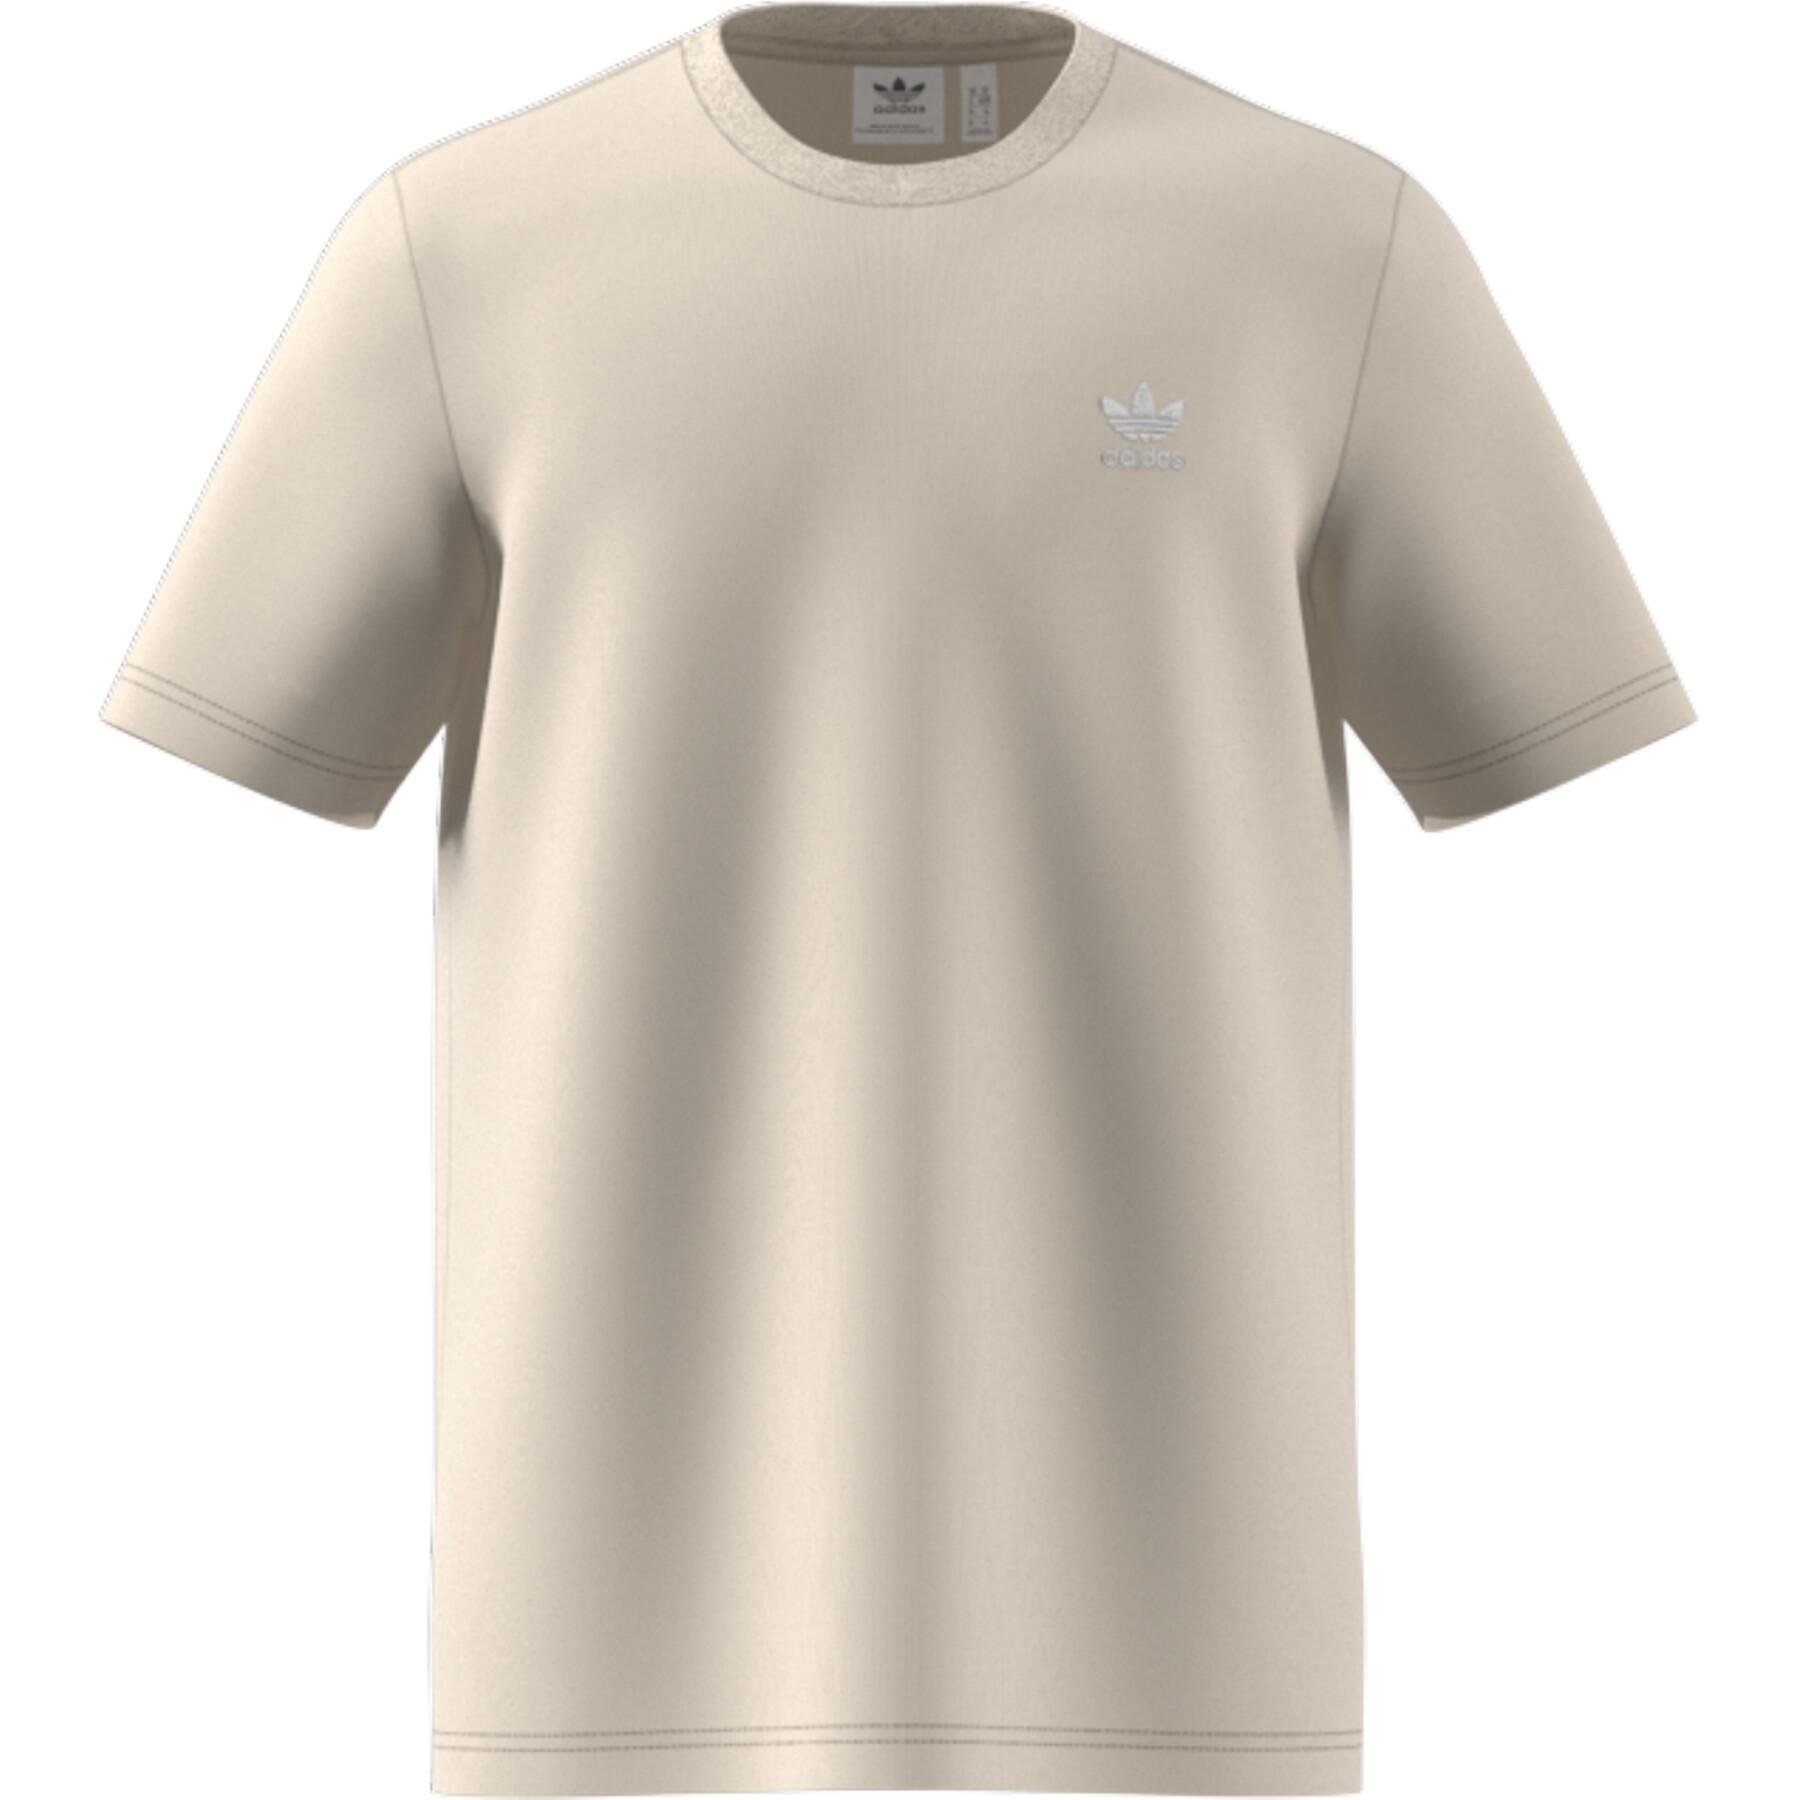 T-shirt adidas Originals LOUNGEWEAR Adicolor Essentials Trefoil